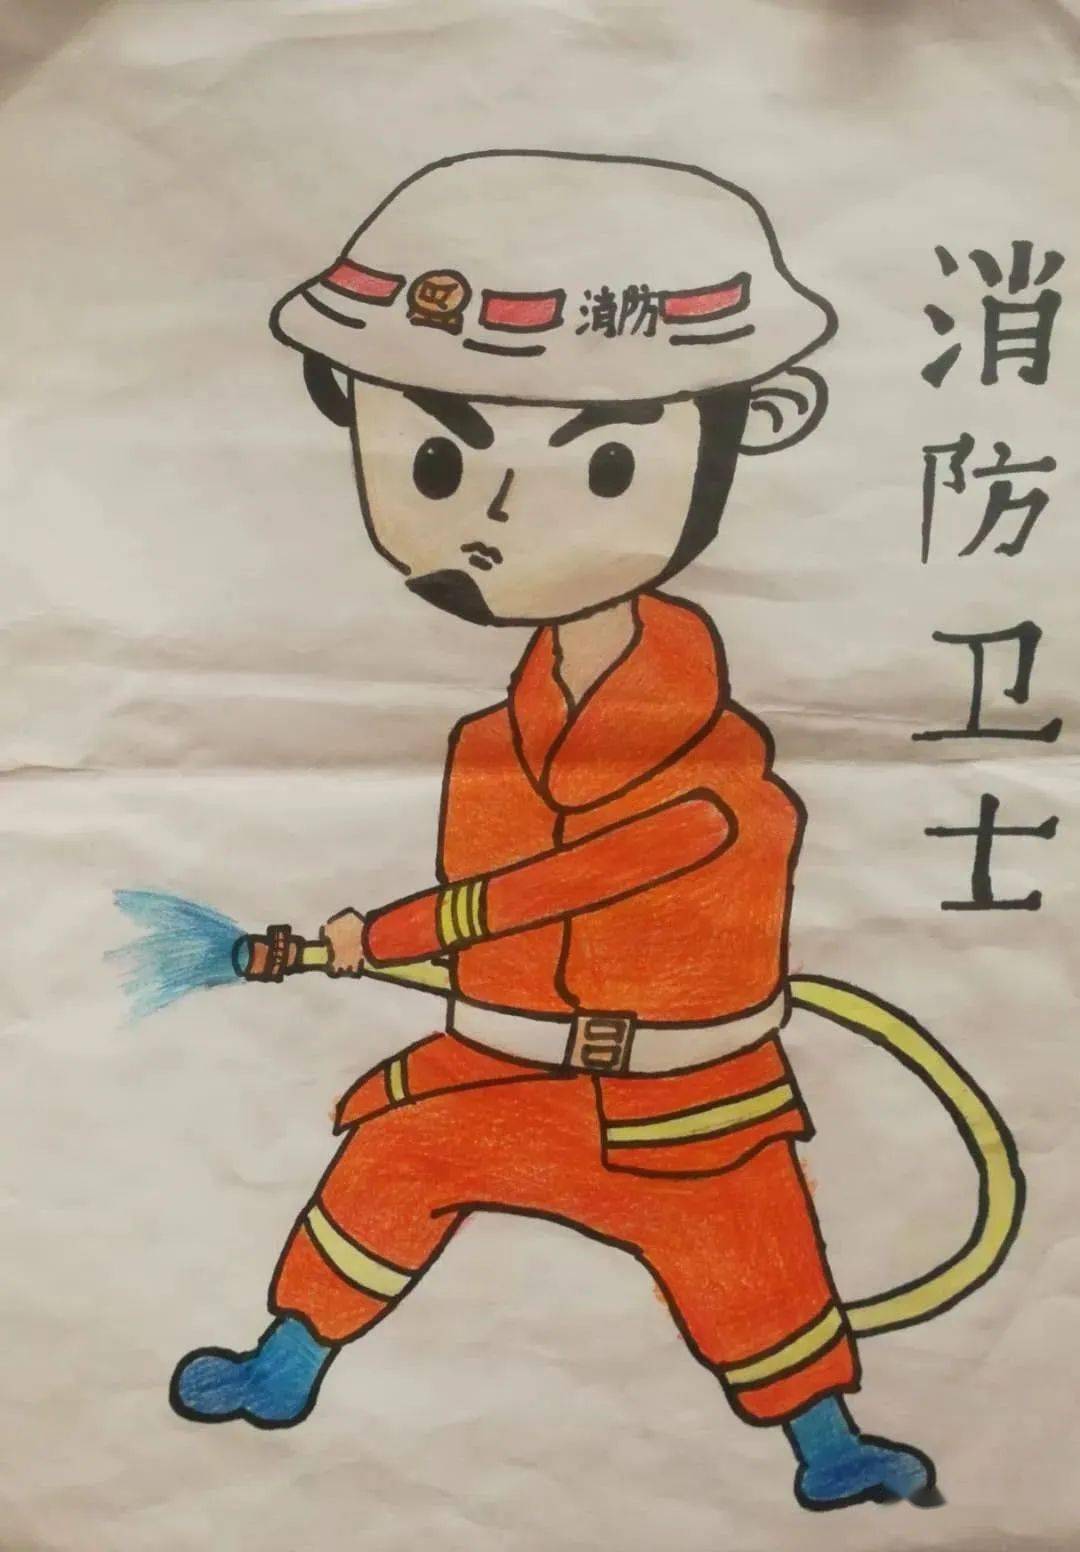 朔州:画出"消防员爸爸"的英雄模样